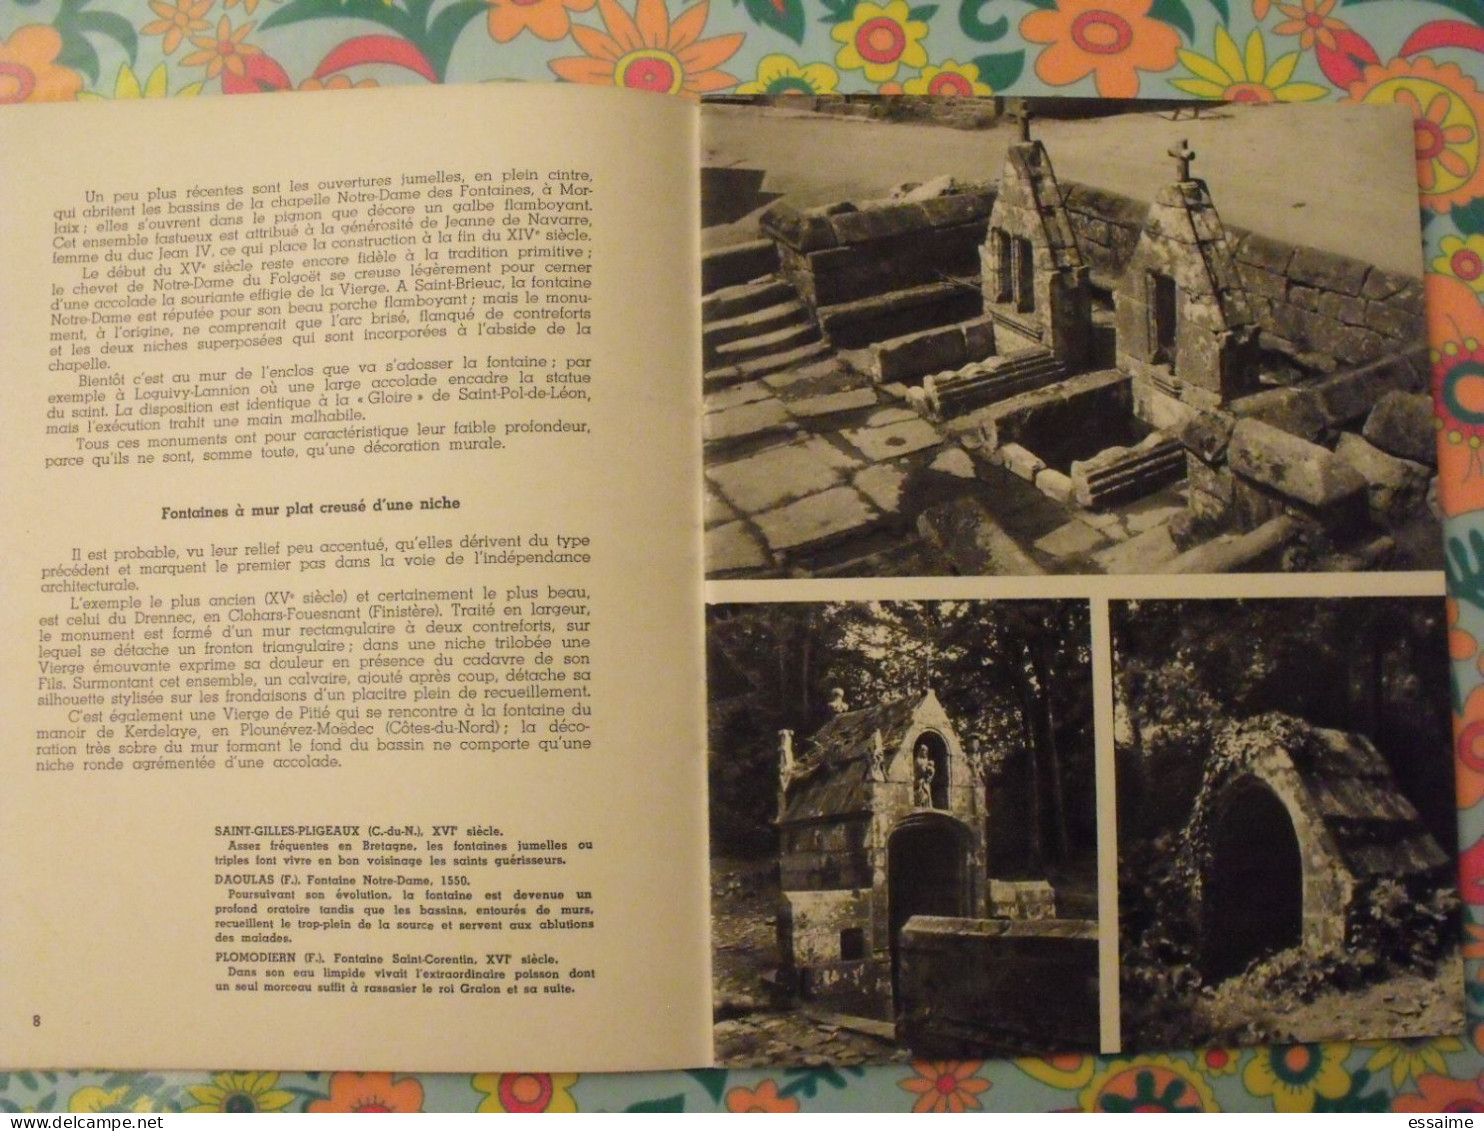 Fontaines sacrées. art breton II. Thomas-Lacroix. images de Bretagne de Jos le Doaré. 1957